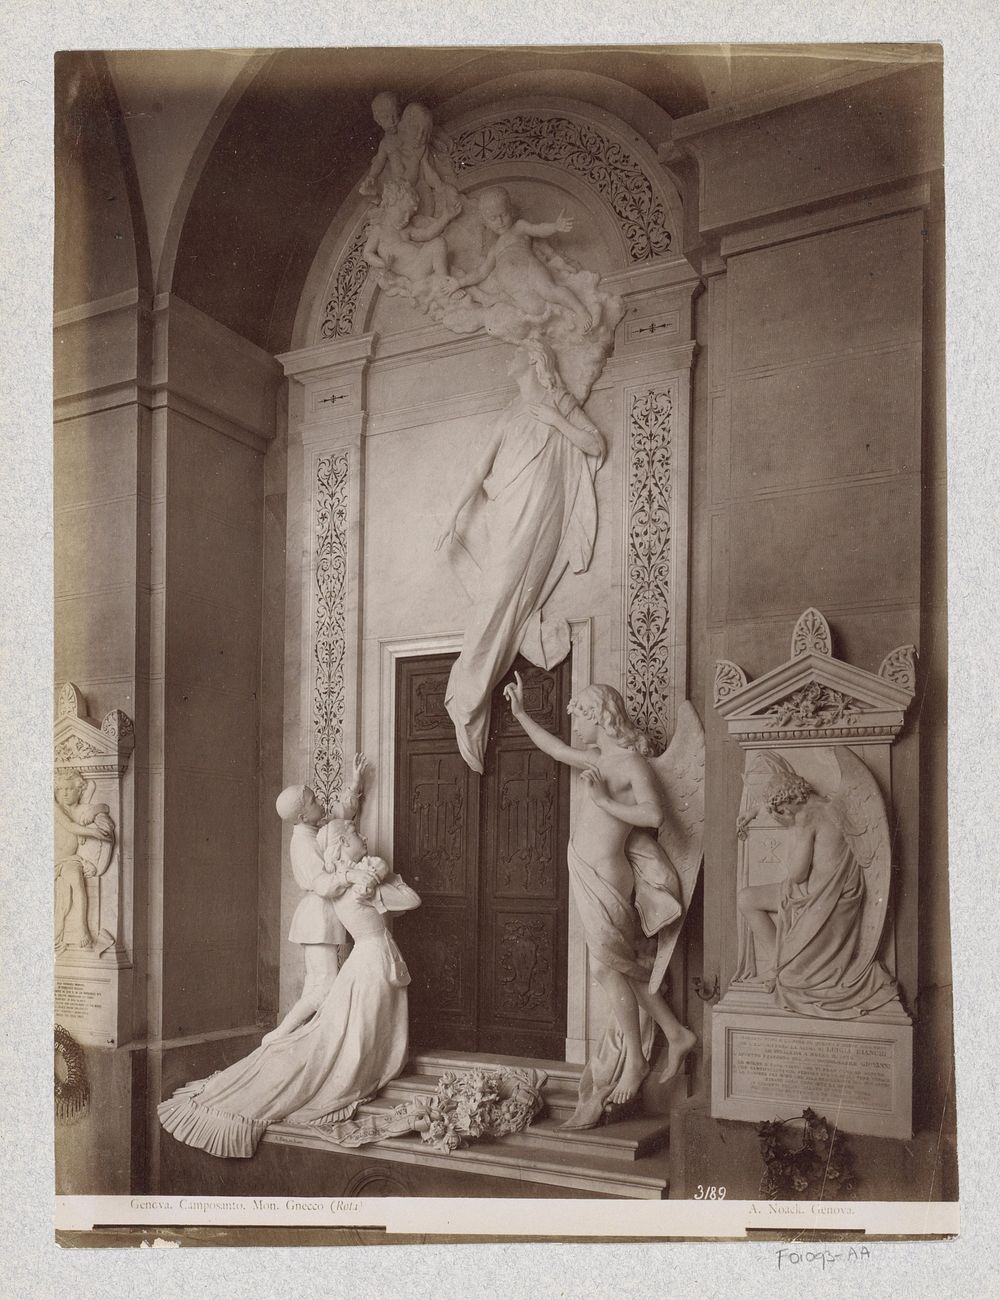 Gnecco-monument op de begraafplaats van Staglieno in Genua (c. 1870 - c. 1890) by Alfredo Noack